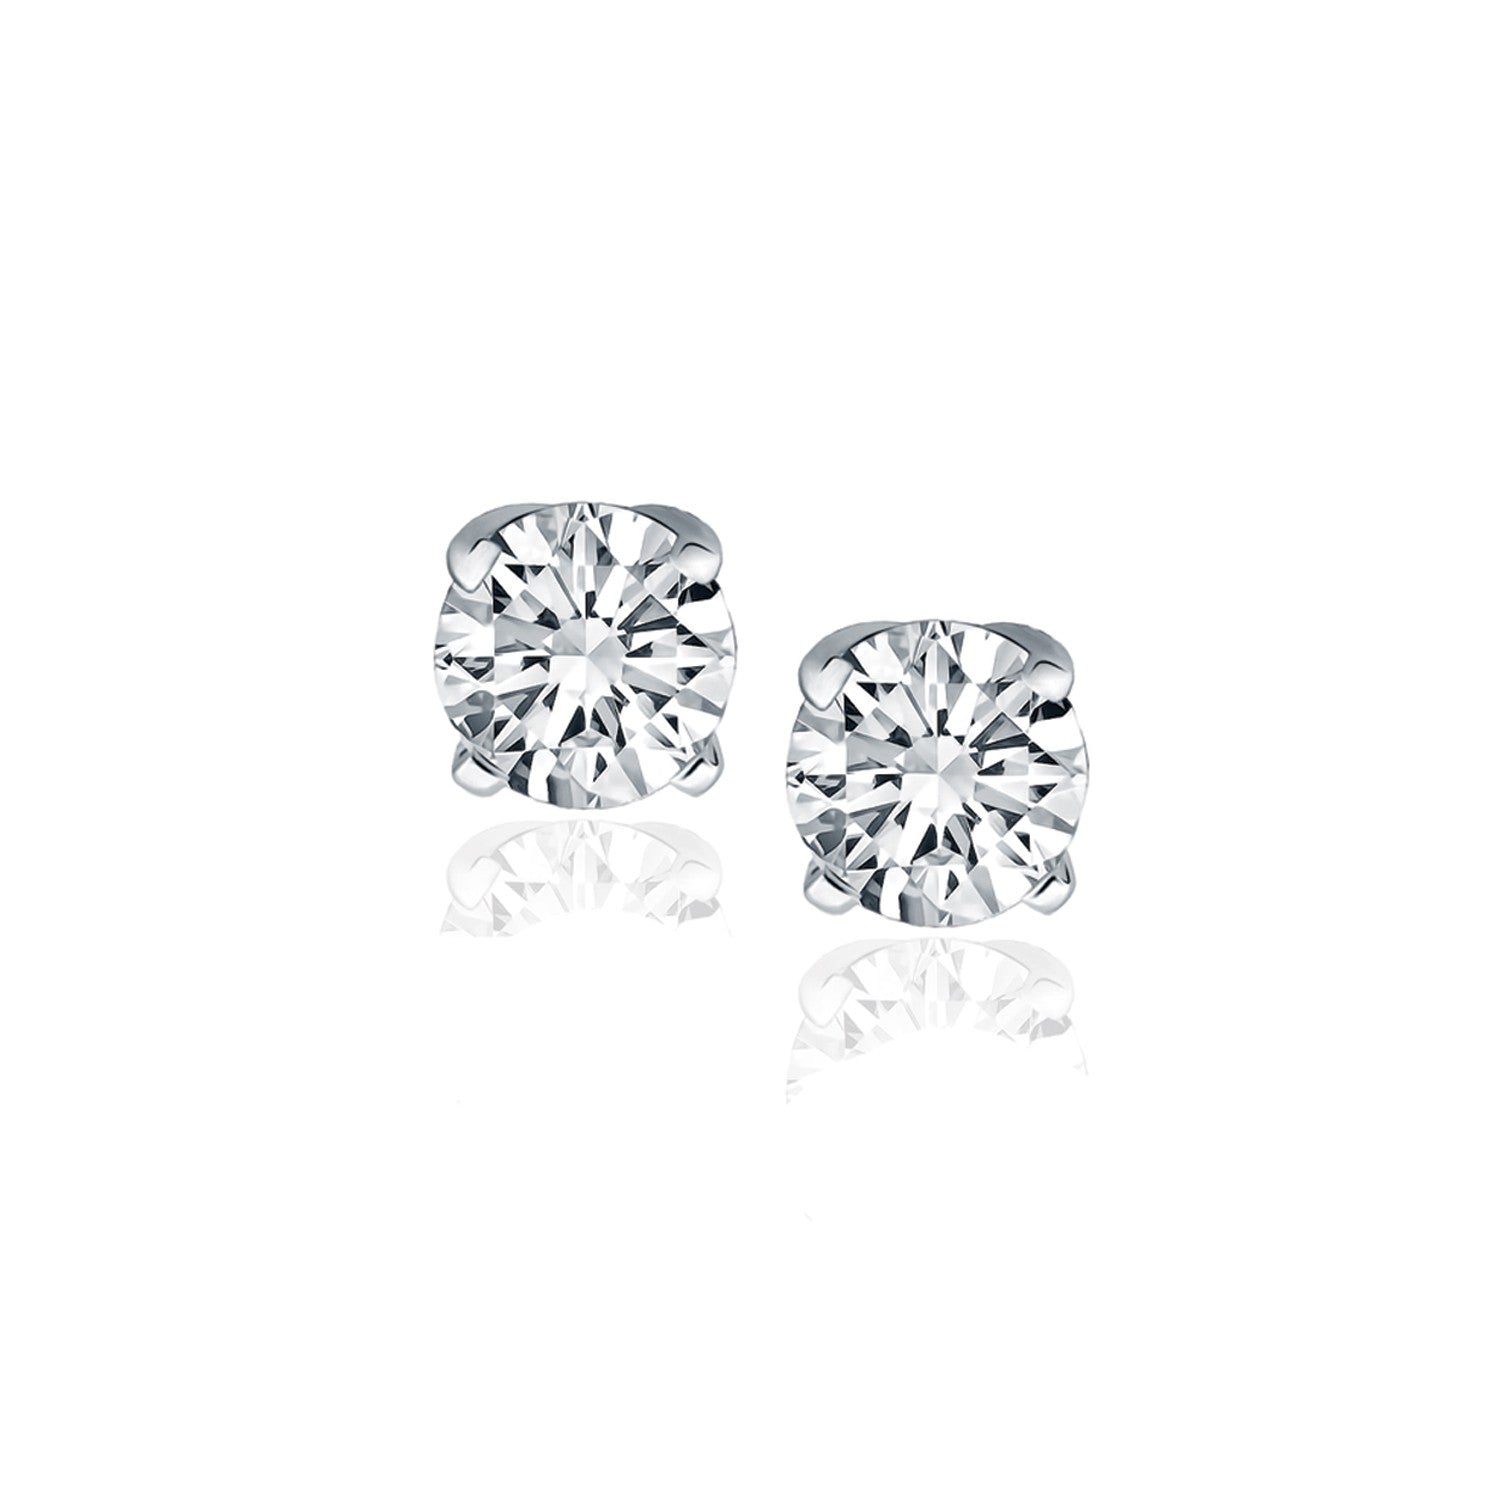 14k White Gold Diamond Four Prong Stud Earrings (1 cttw)